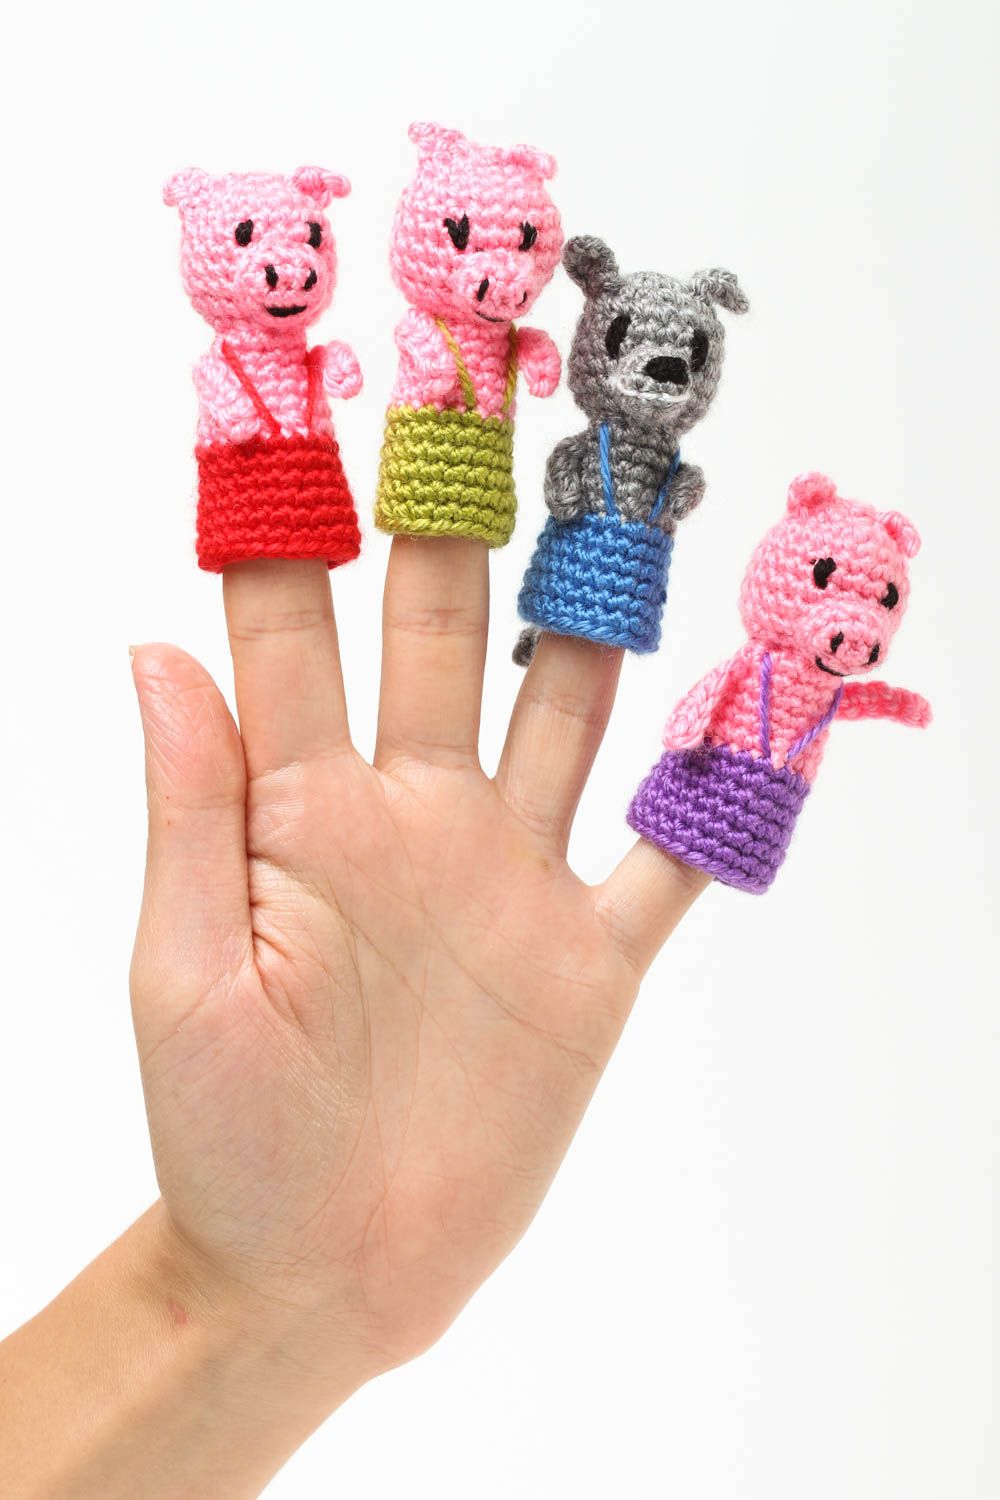 Muñecos hechos a mano para dedos juguetes artesanales regalos originales foto 5